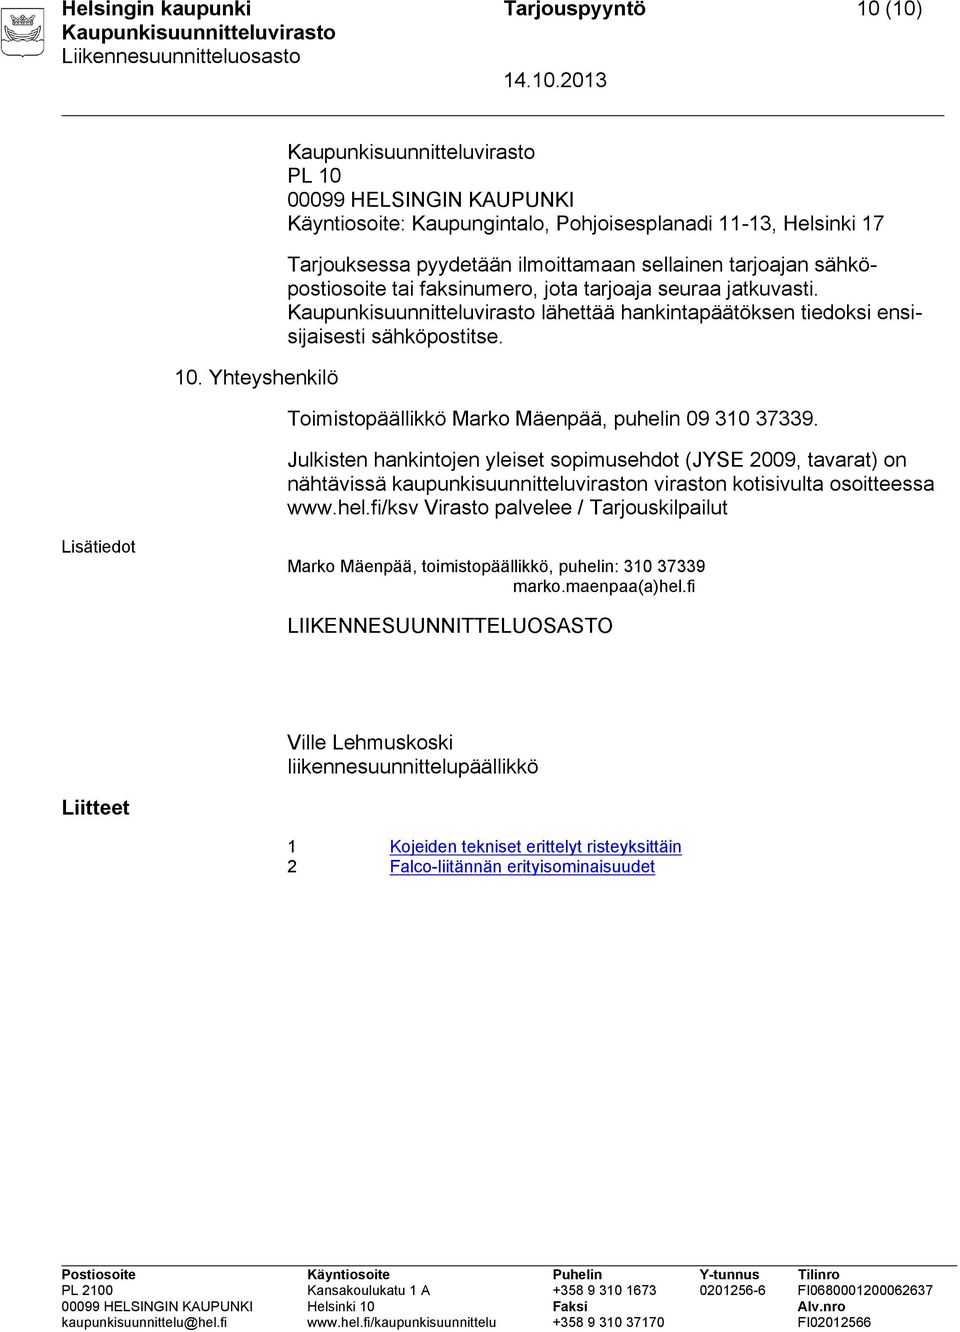 jota tarjoaja seuraa jatkuvasti. lähettää hankintapäätöksen tiedoksi ensisijaisesti sähköpostitse. Toimistopäällikkö Marko Mäenpää, puhelin 09 310 37339.